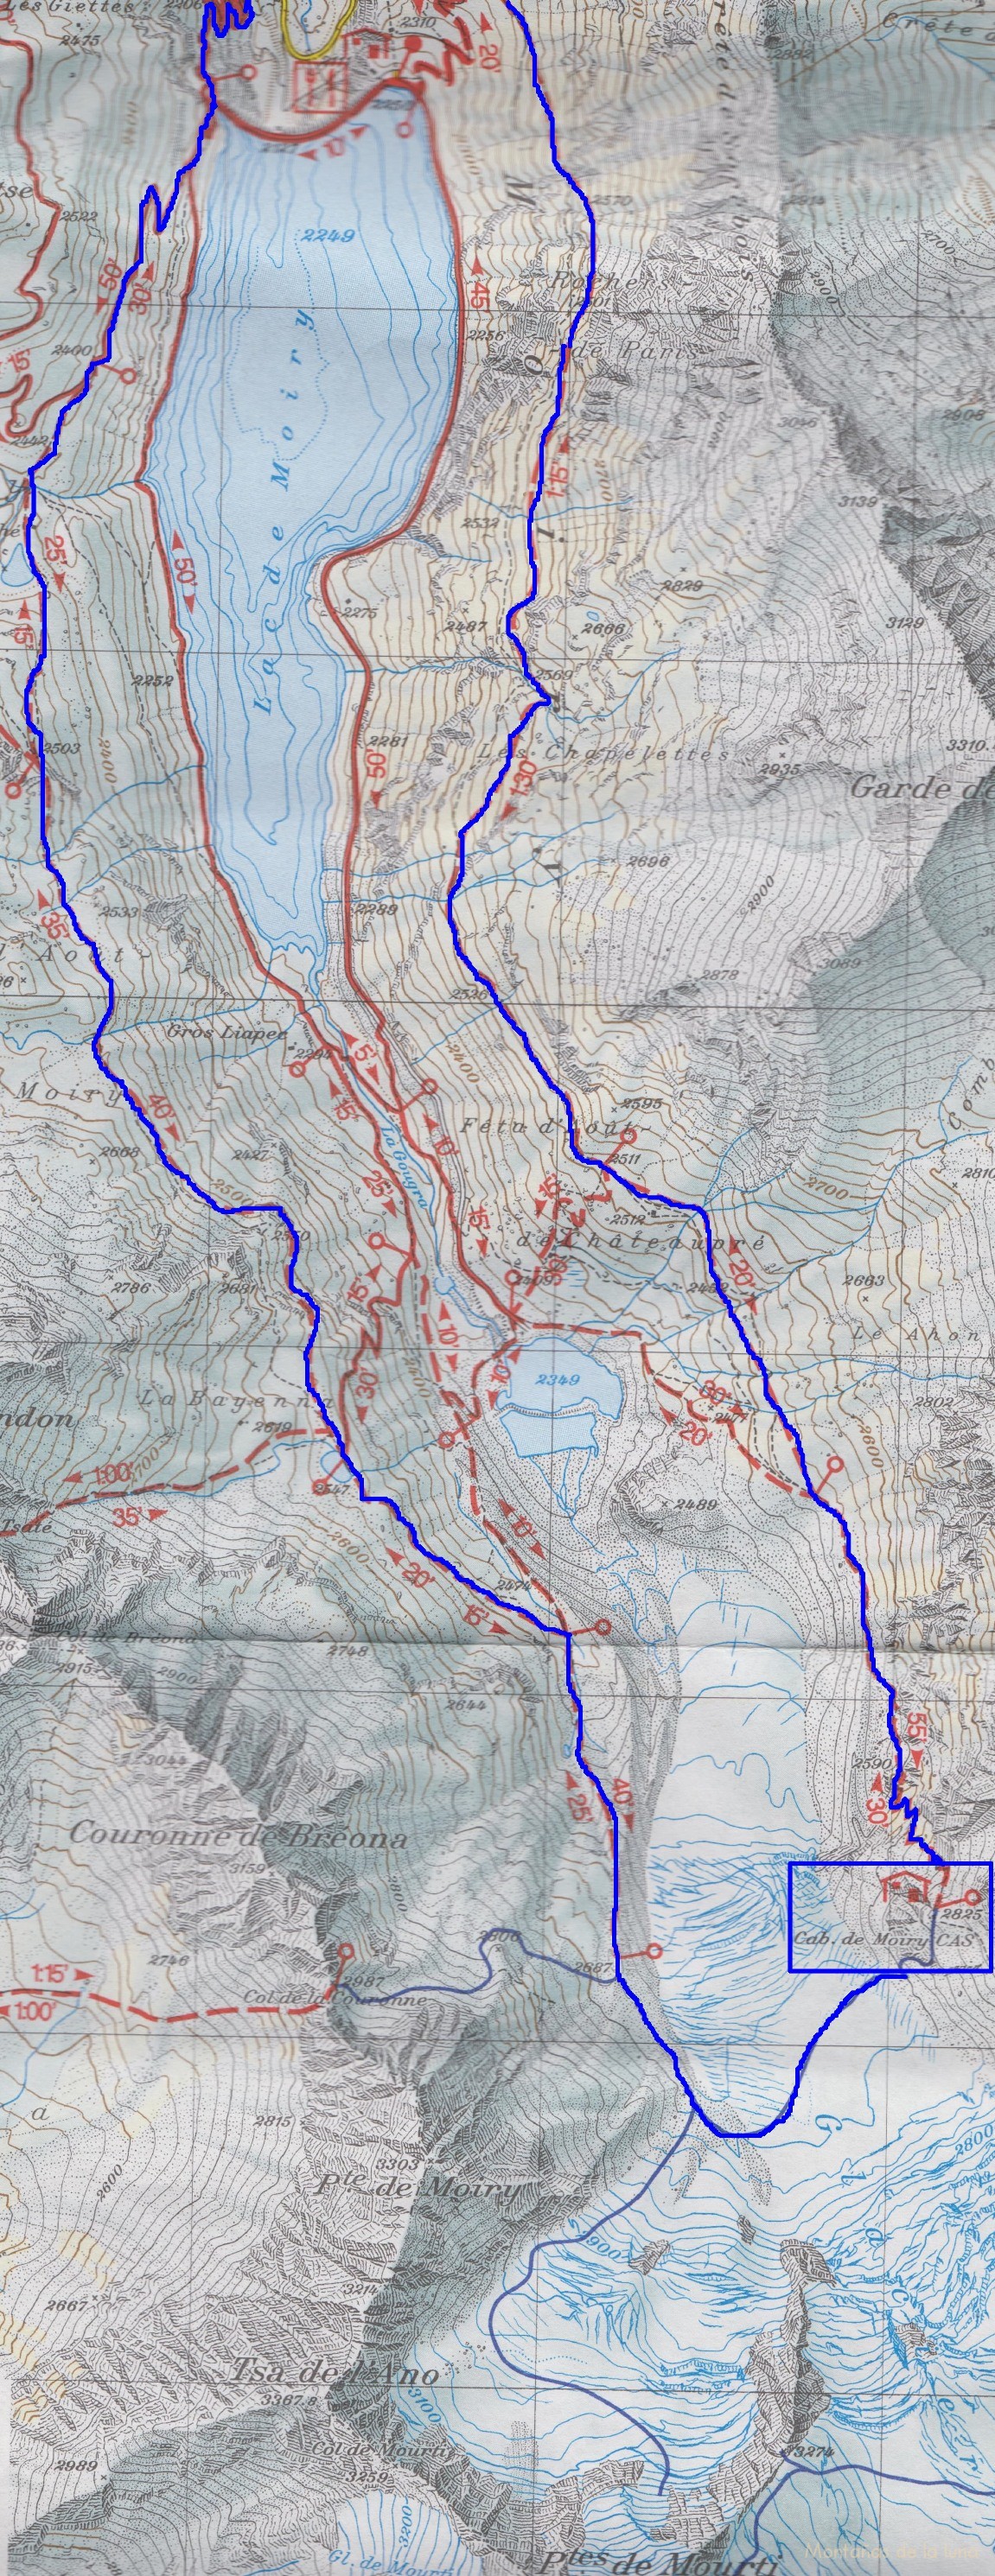 Croquis del recorrido de la 3º Etapa del Tour de la Val d’Anniviers con la subida por la traza de la derecha a la Cabaña de Moiry. Y de la 4º Etapa (Cabaña de Moiry-Mayoux) con el descenso desde la Cabaña de Moiry por la traza de la izquierda.